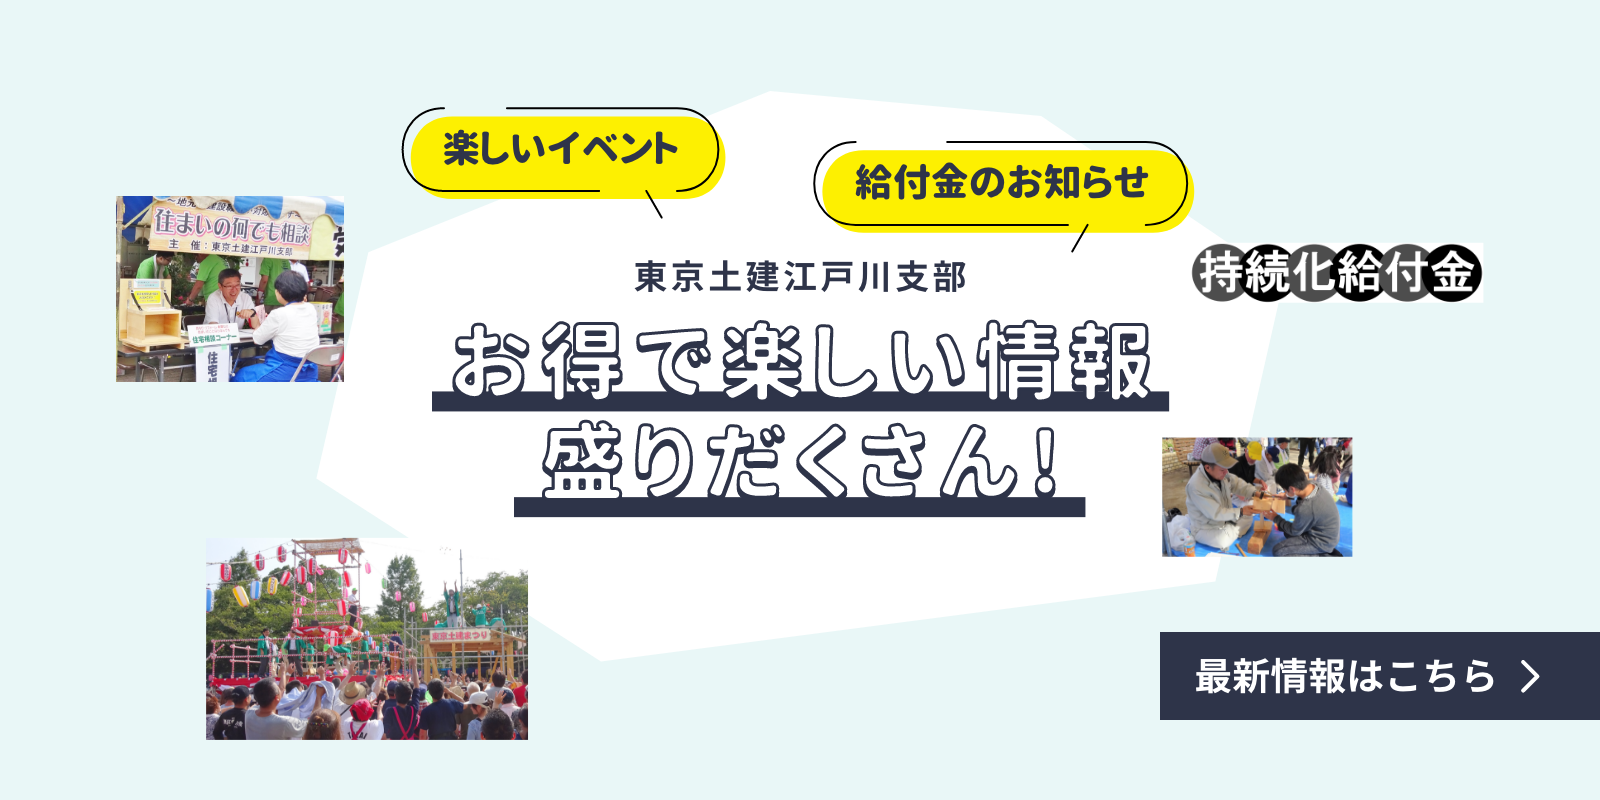 楽しいイベント 給付金のお知らせ 東京土建江戸川支部 お得で楽しい情報盛りだくさん!